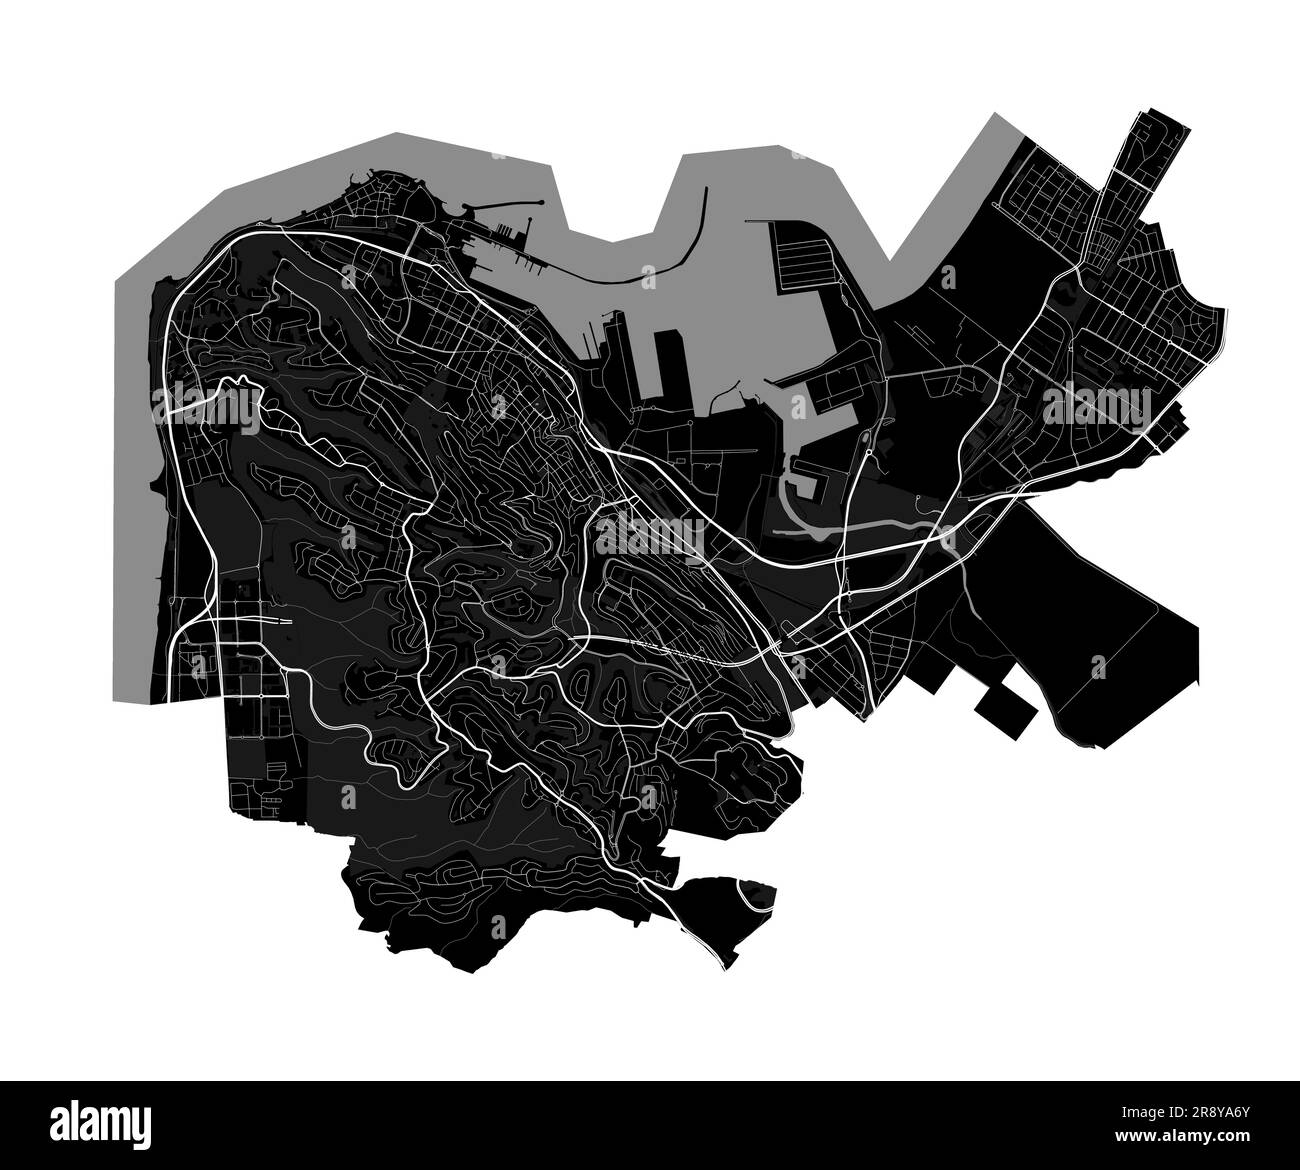 Mappa di Haifa. Mappa nera dettagliata dell'area amministrativa della città di Haifa. Vista sull'aria metropolitana con poster del paesaggio urbano. Terra nera con edifici bianchi, acqua, prua Illustrazione Vettoriale